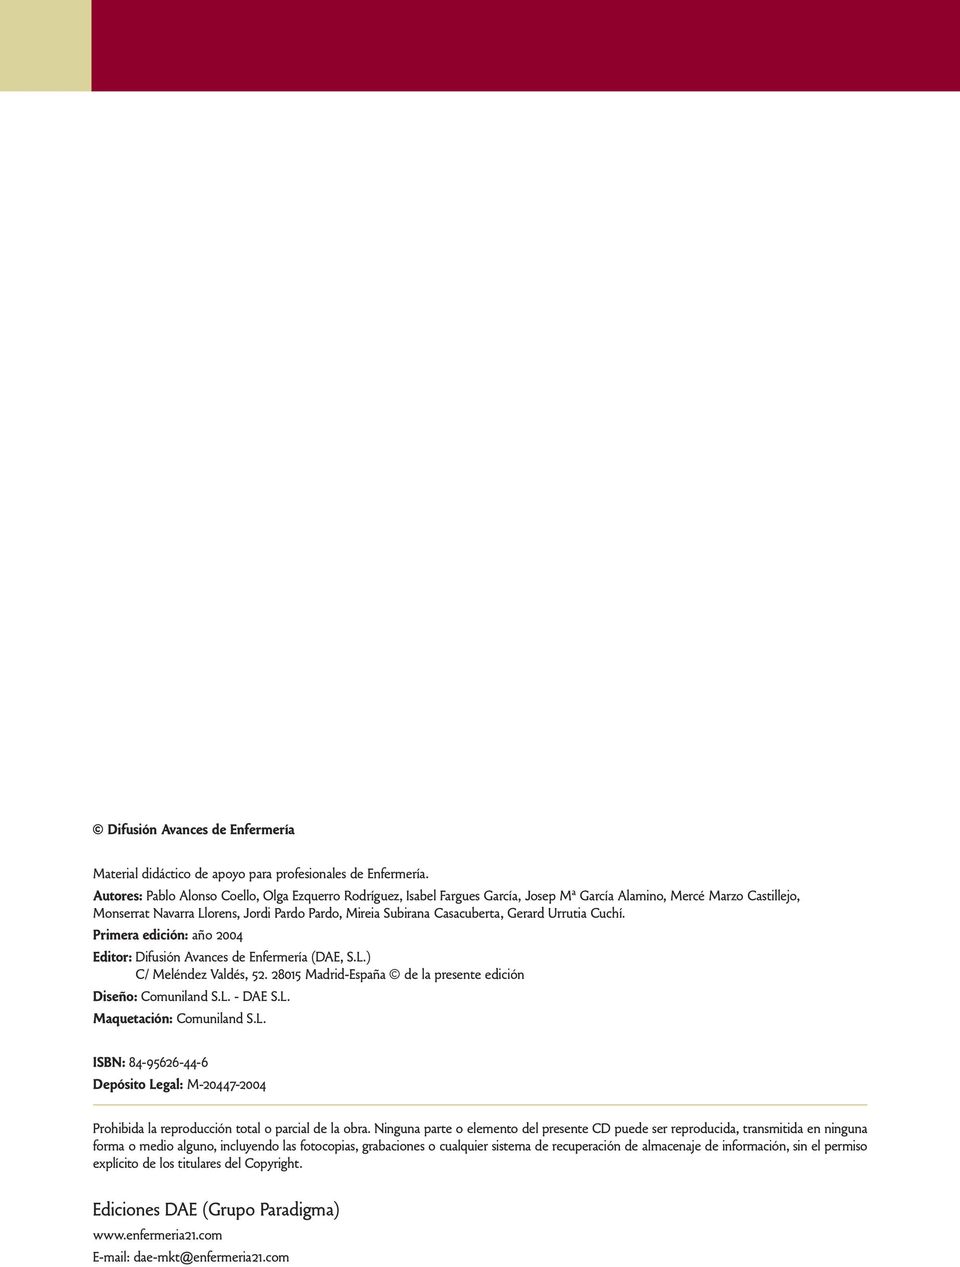 Casacuberta, Gerard Urrutia Cuchí. Primera edición: año 2004 Editor: Difusión Avances de Enfermería (DAE, S.L.) C/ Meléndez Valdés, 52. 28015 Madrid-España de la presente edición Diseño: Comuniland S.